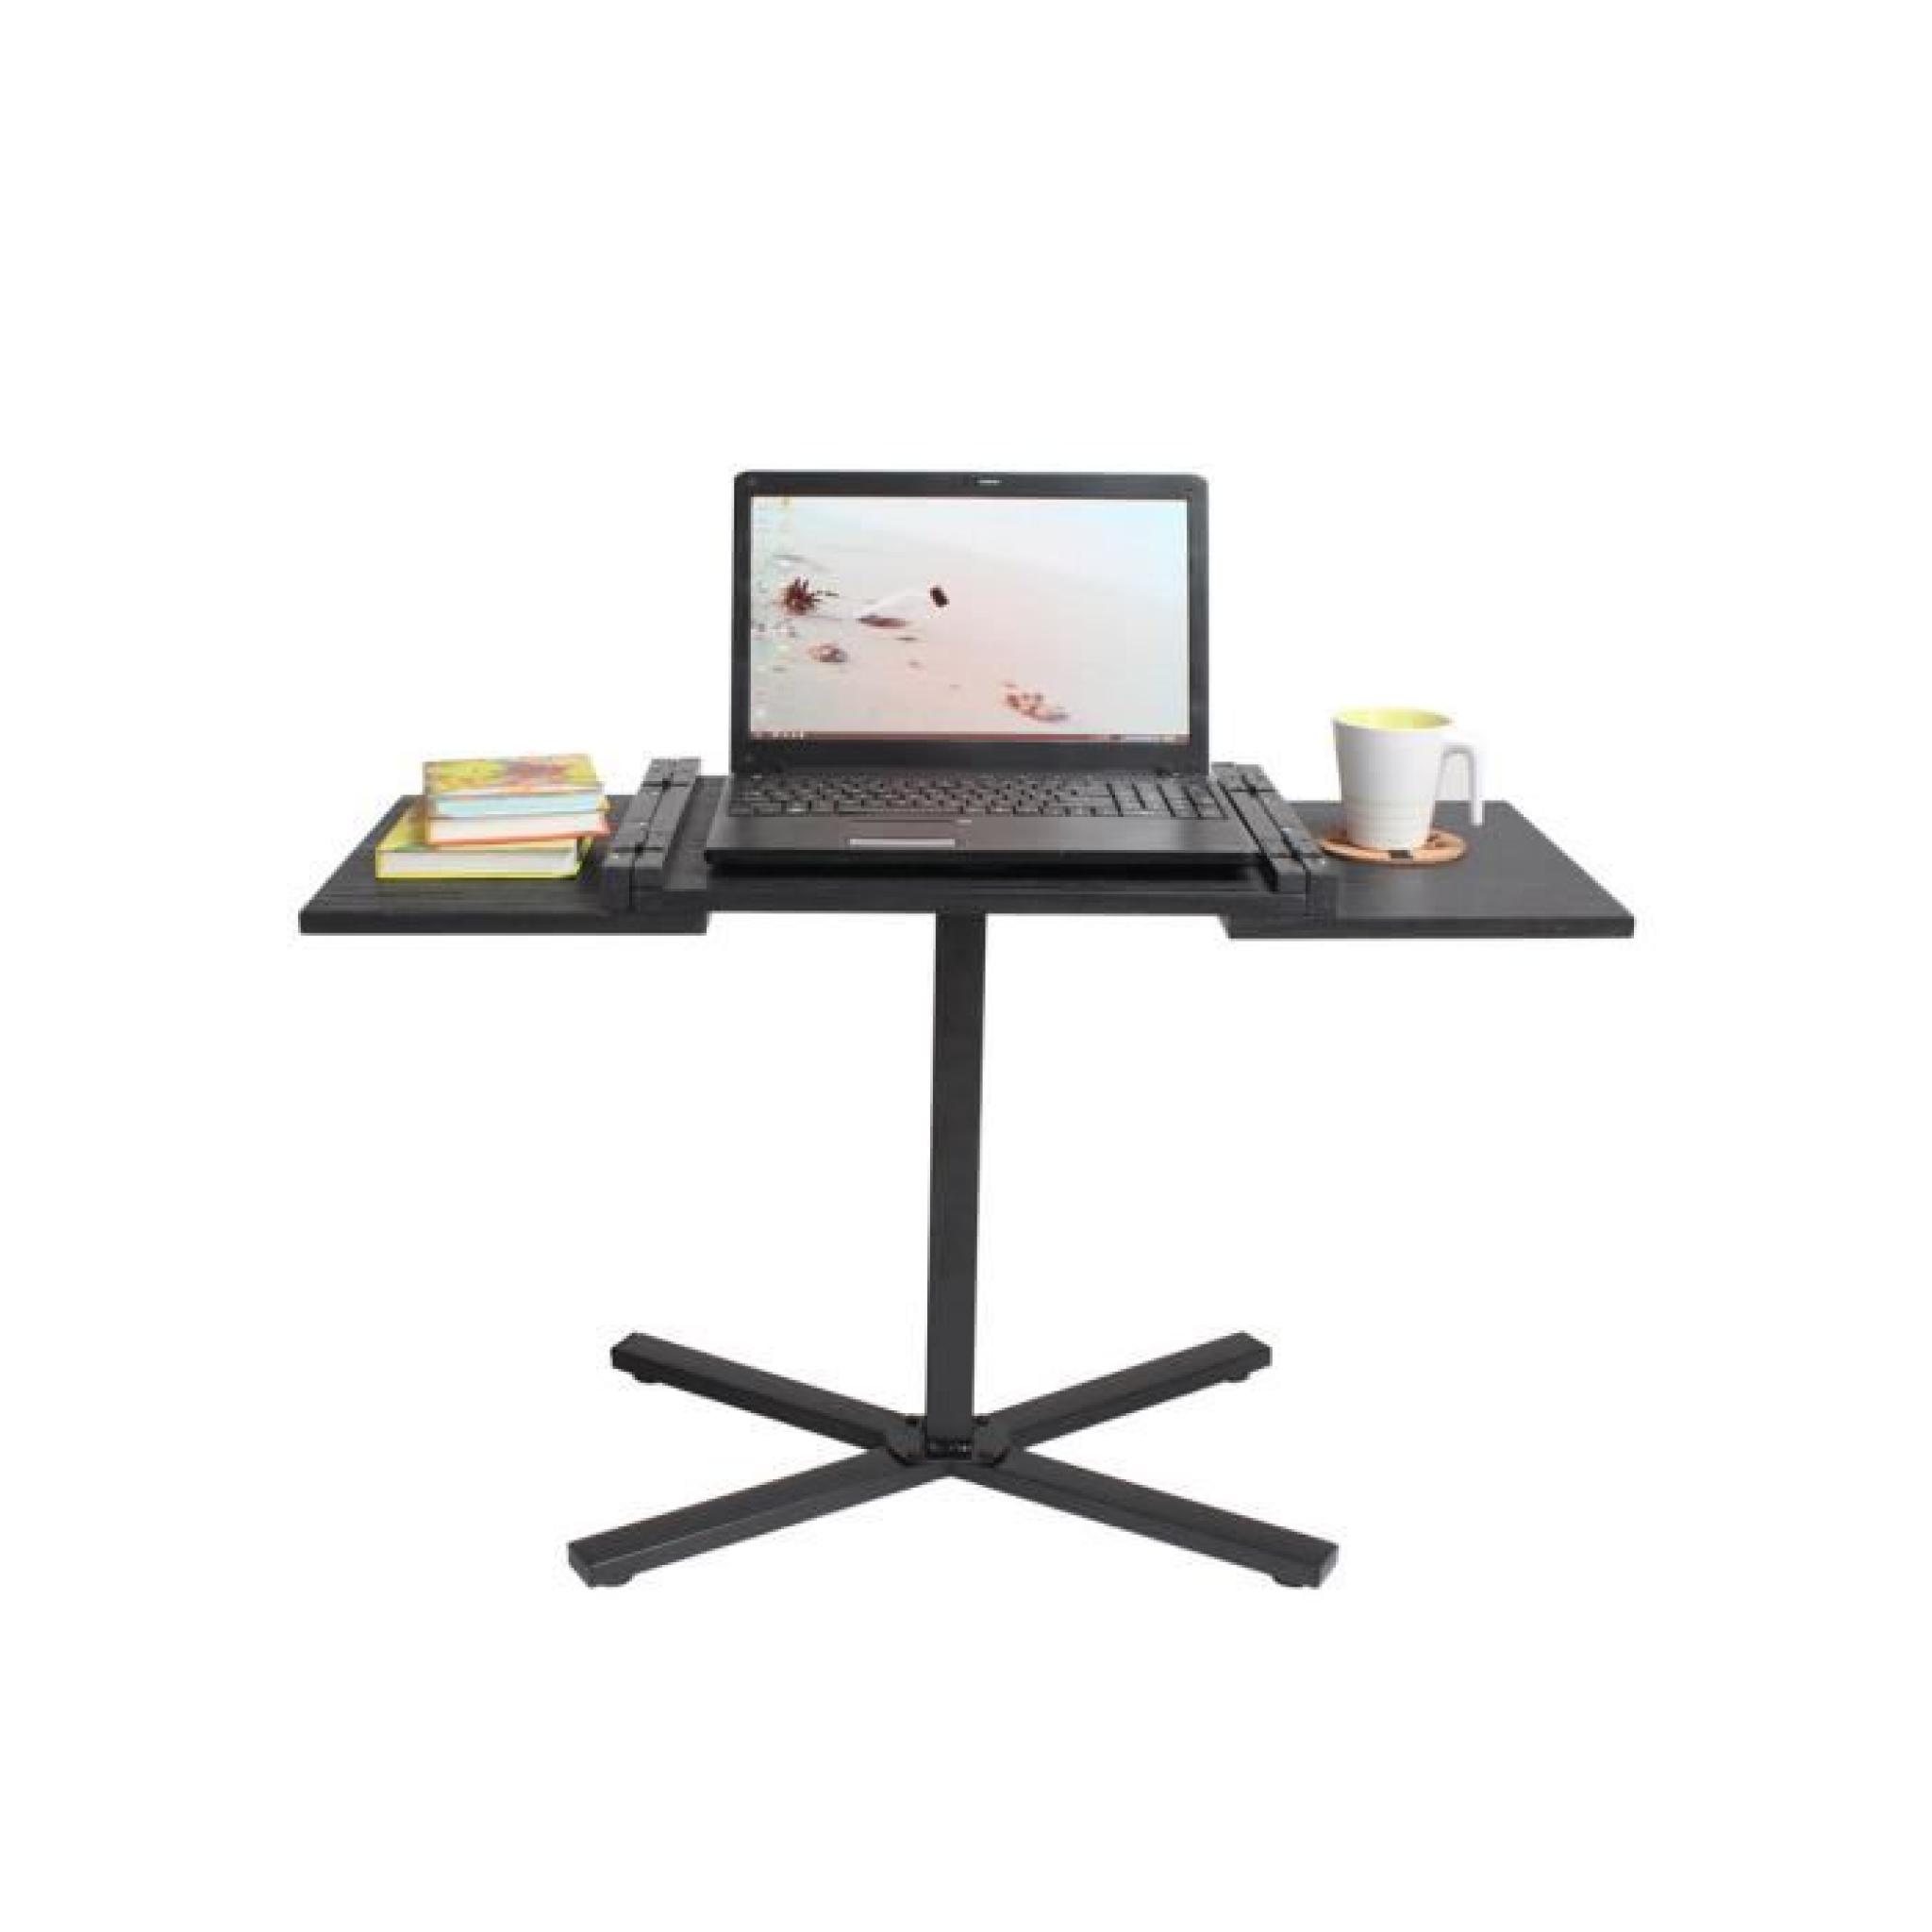 Table d'rdinateur Pliable Portable Surface Adjustable de 55 à 90cm EXPRESS